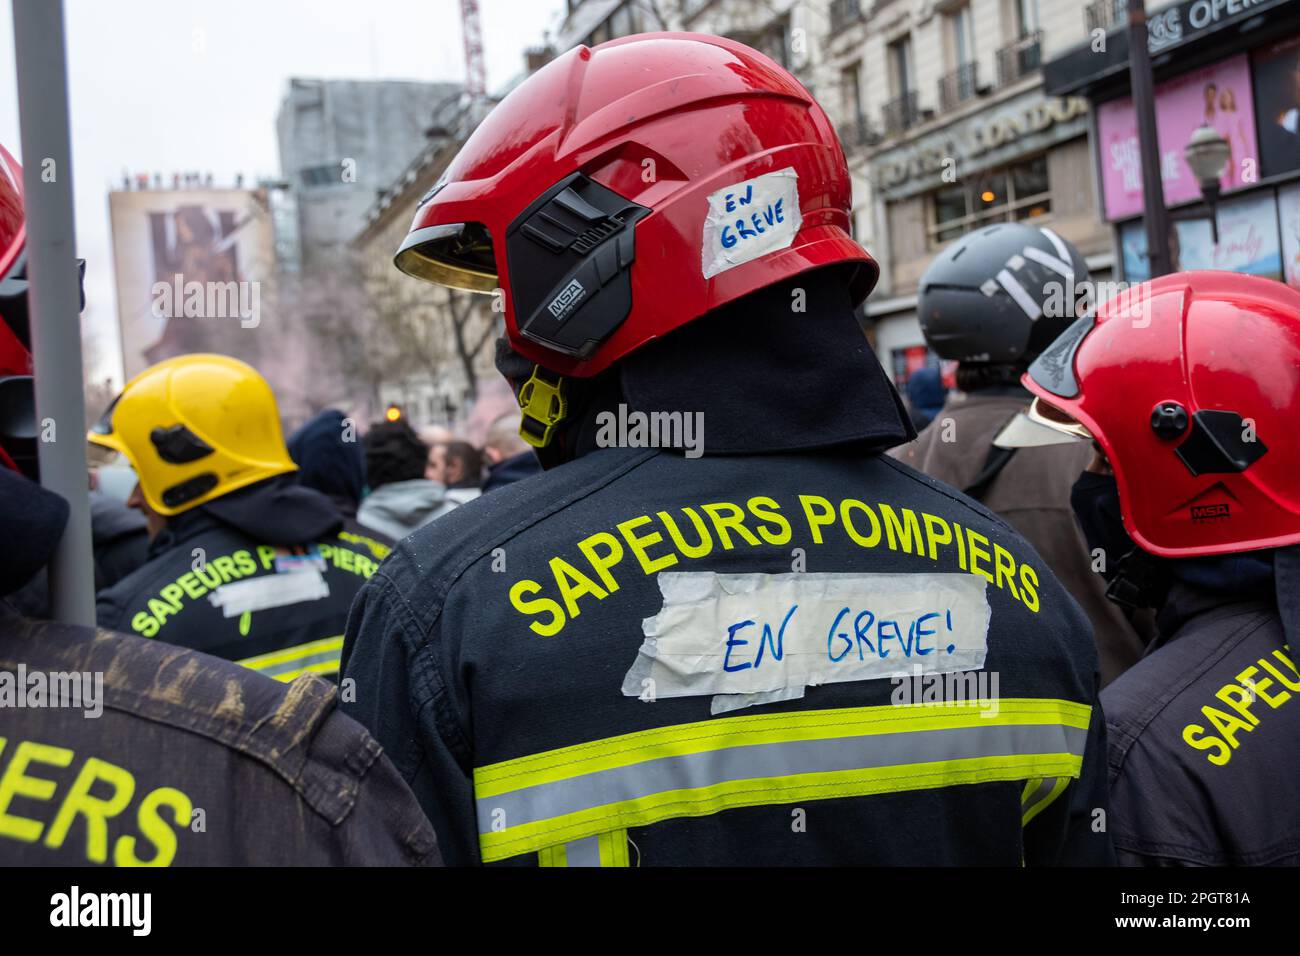 Des pompiers français en grève, vus de derrière lors d'une manifestation contre la réforme de la retraite en France Banque D'Images